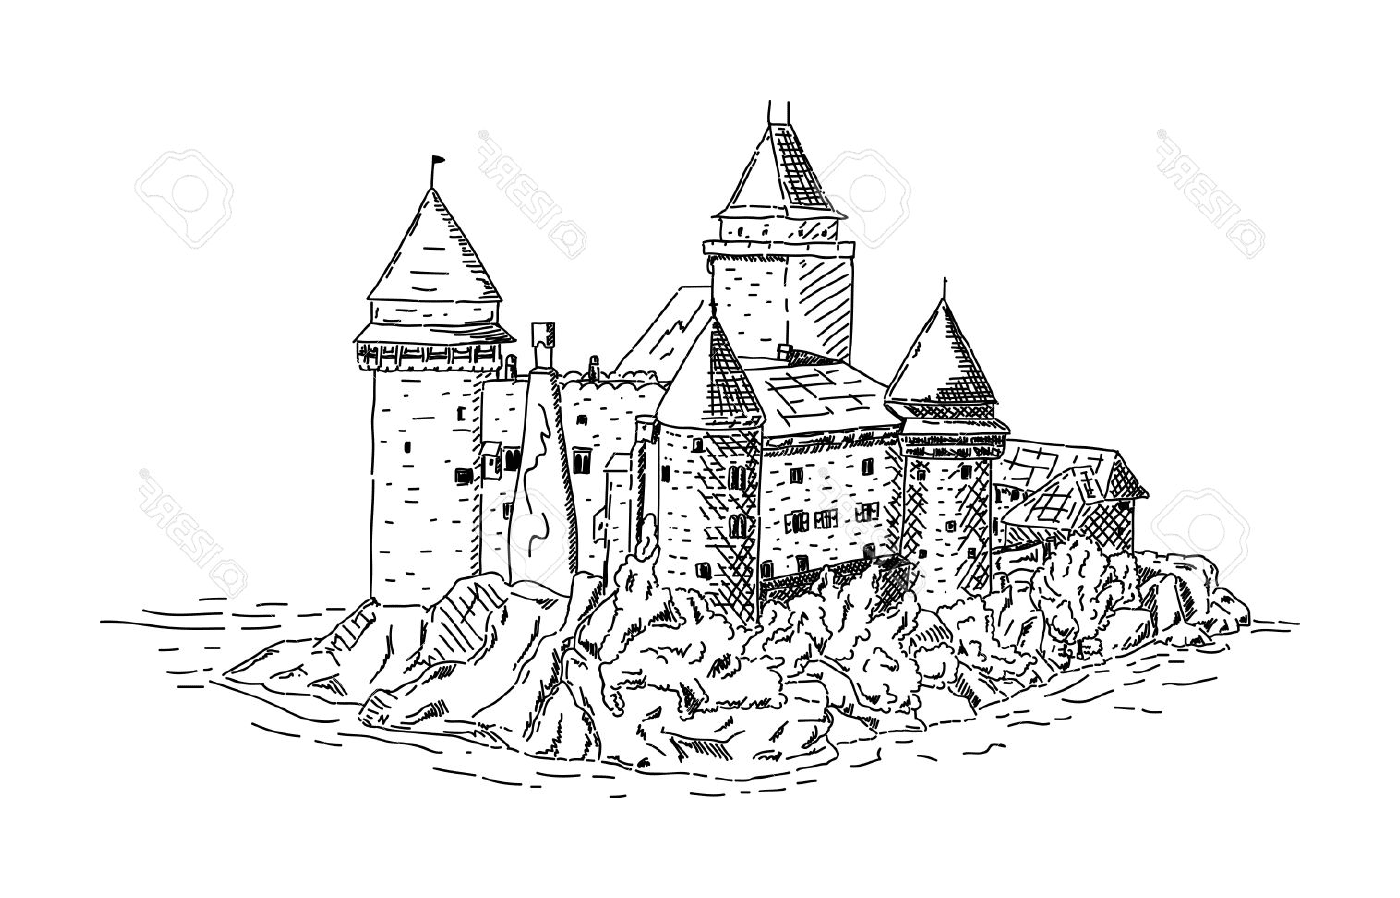  Un castello medievale vicino al mare 